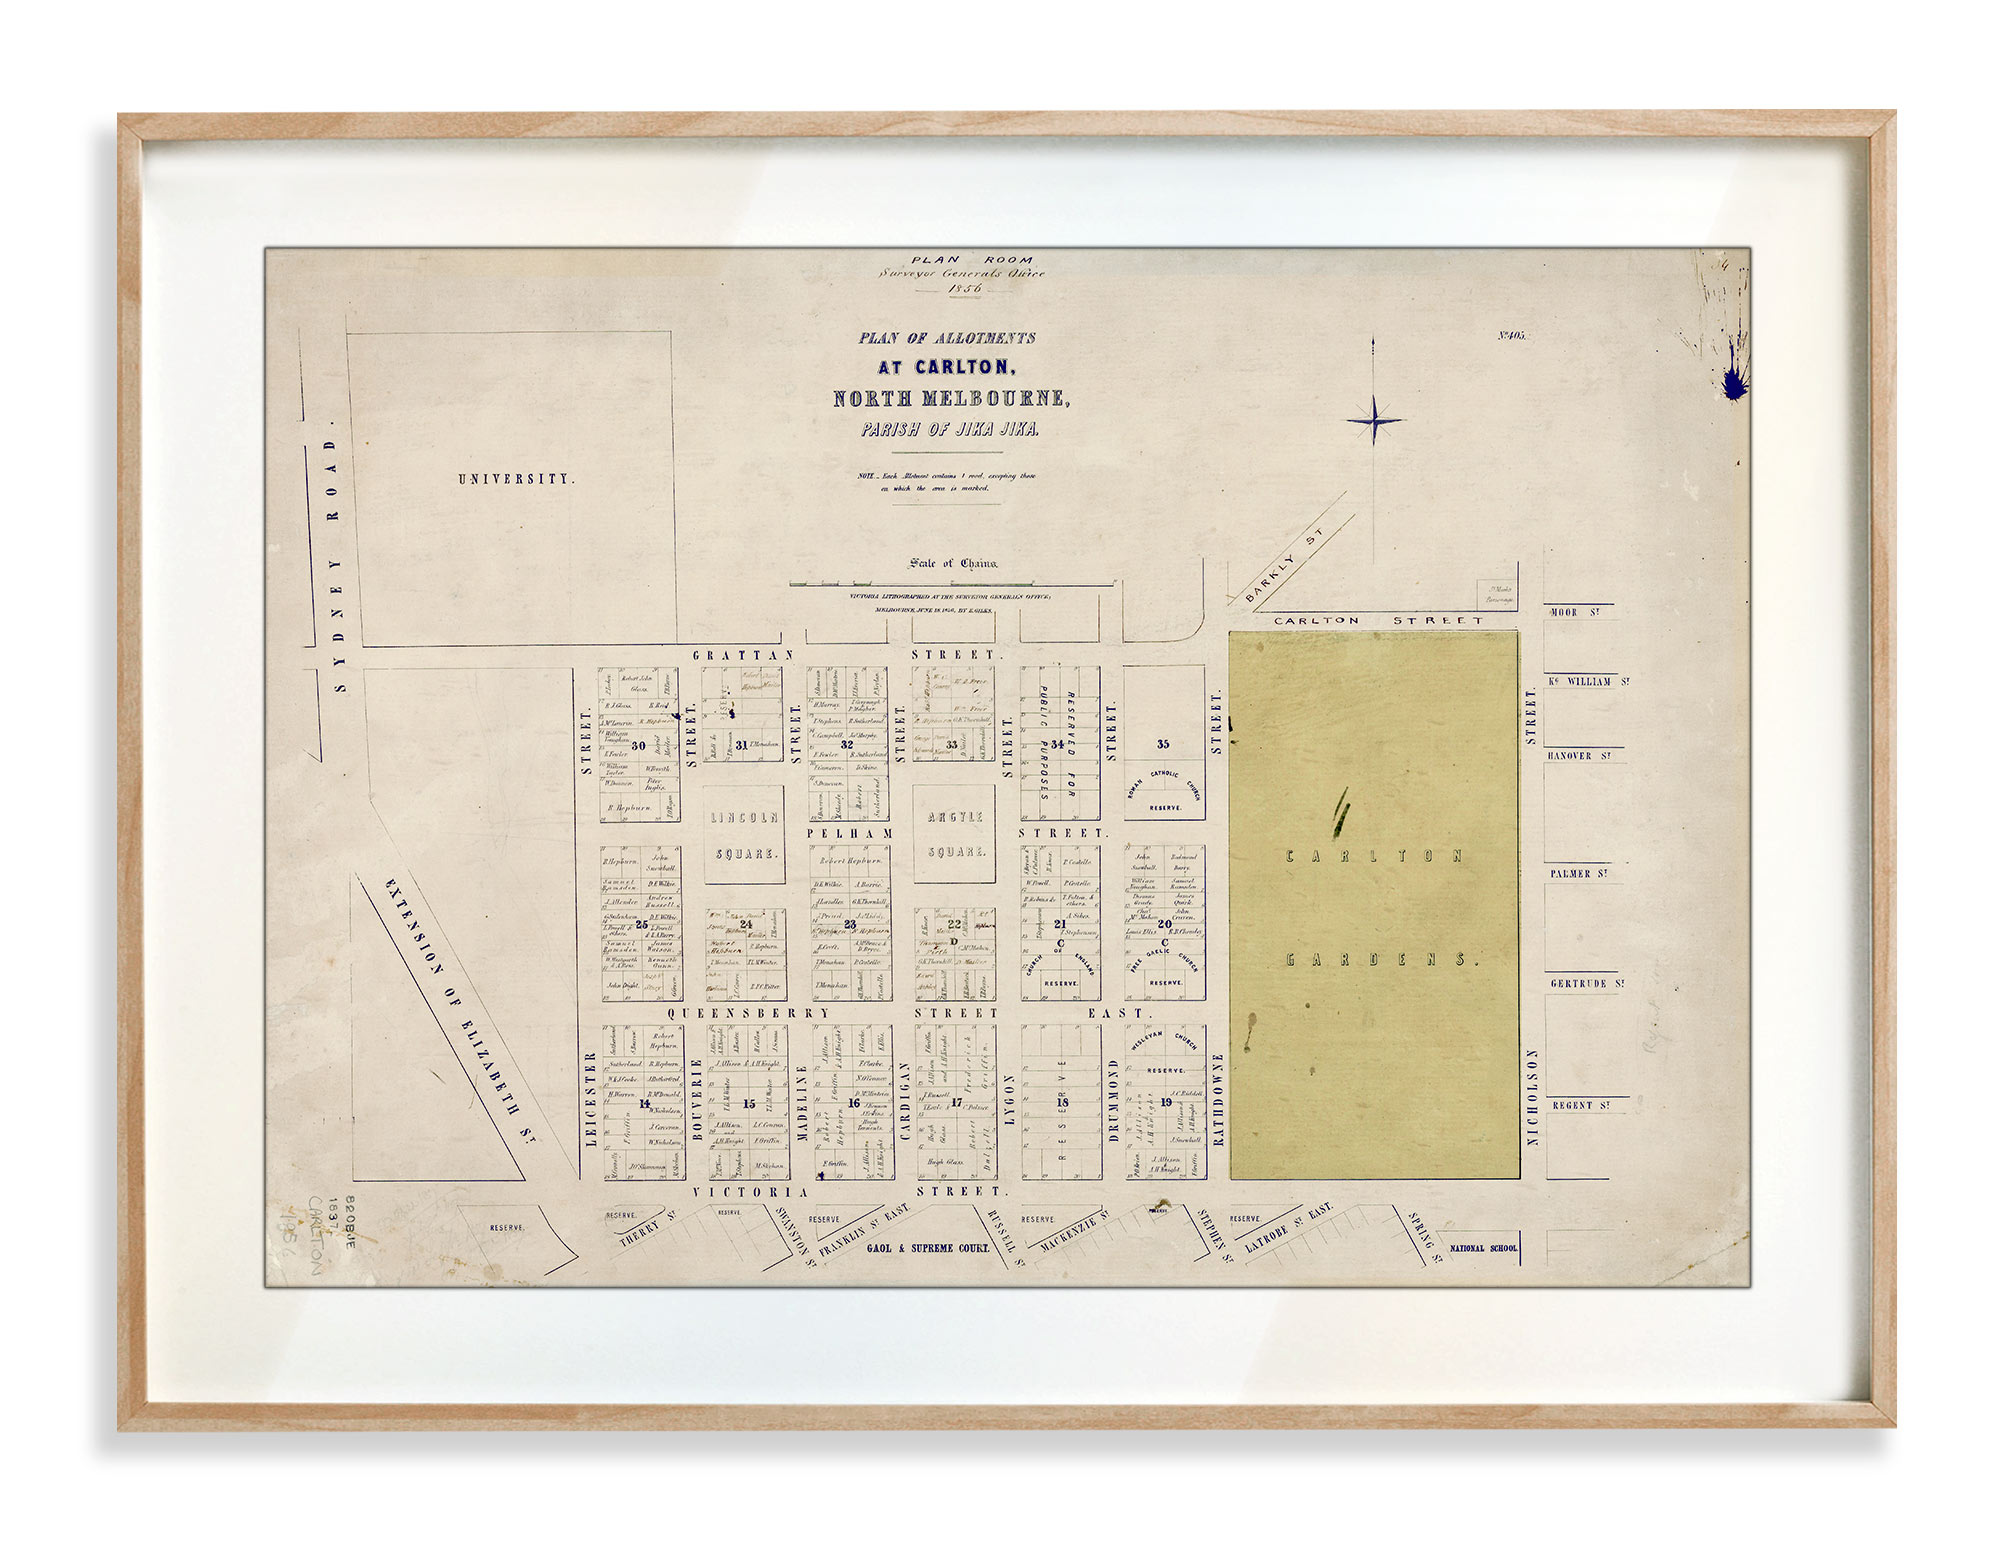 Map Prints | Vintage Maps | Carlton | Melbourne | Print modern